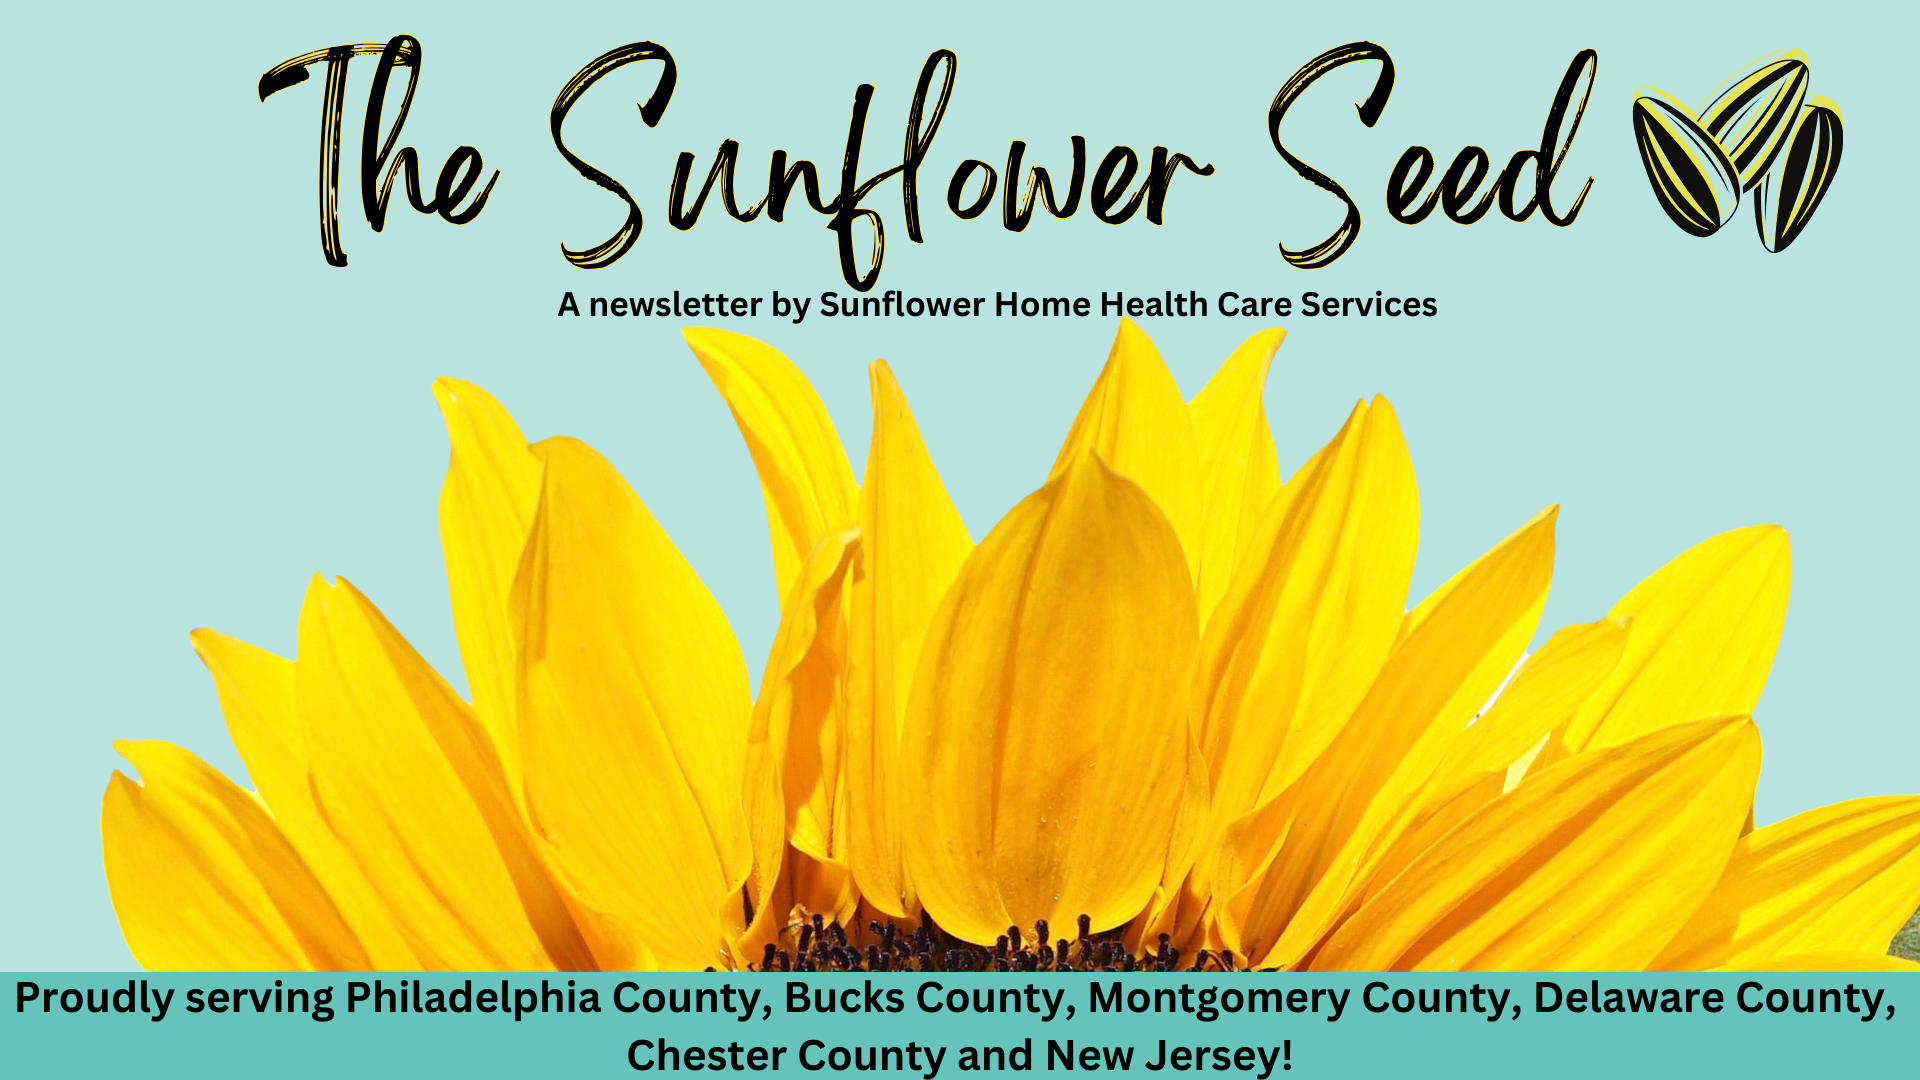 December Sunflower Seed Newsletter